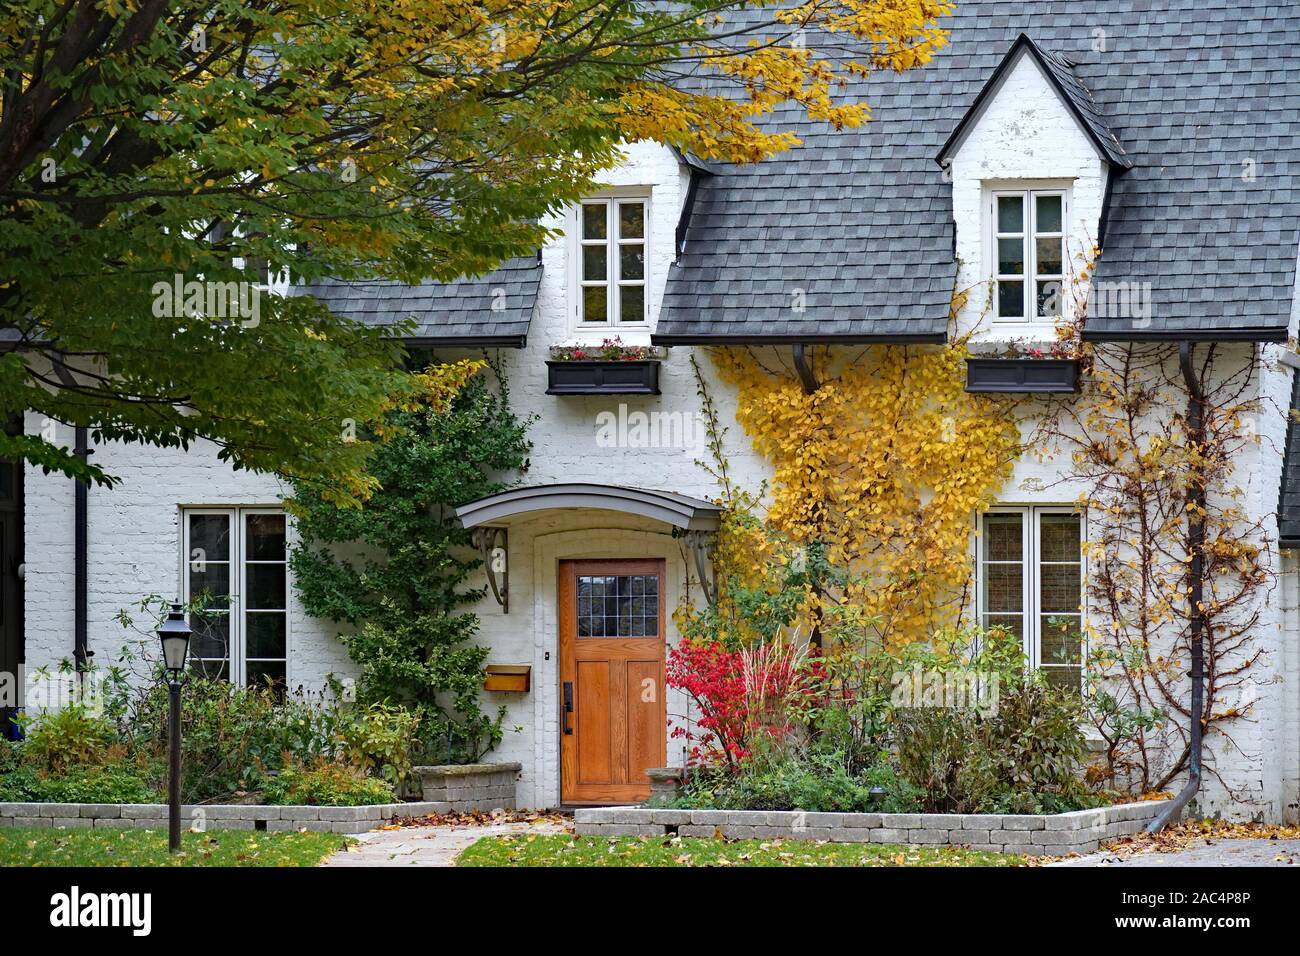 Vieille maison avec des briques peintes en blanc et lucarne avec couleurs d'automne Banque D'Images